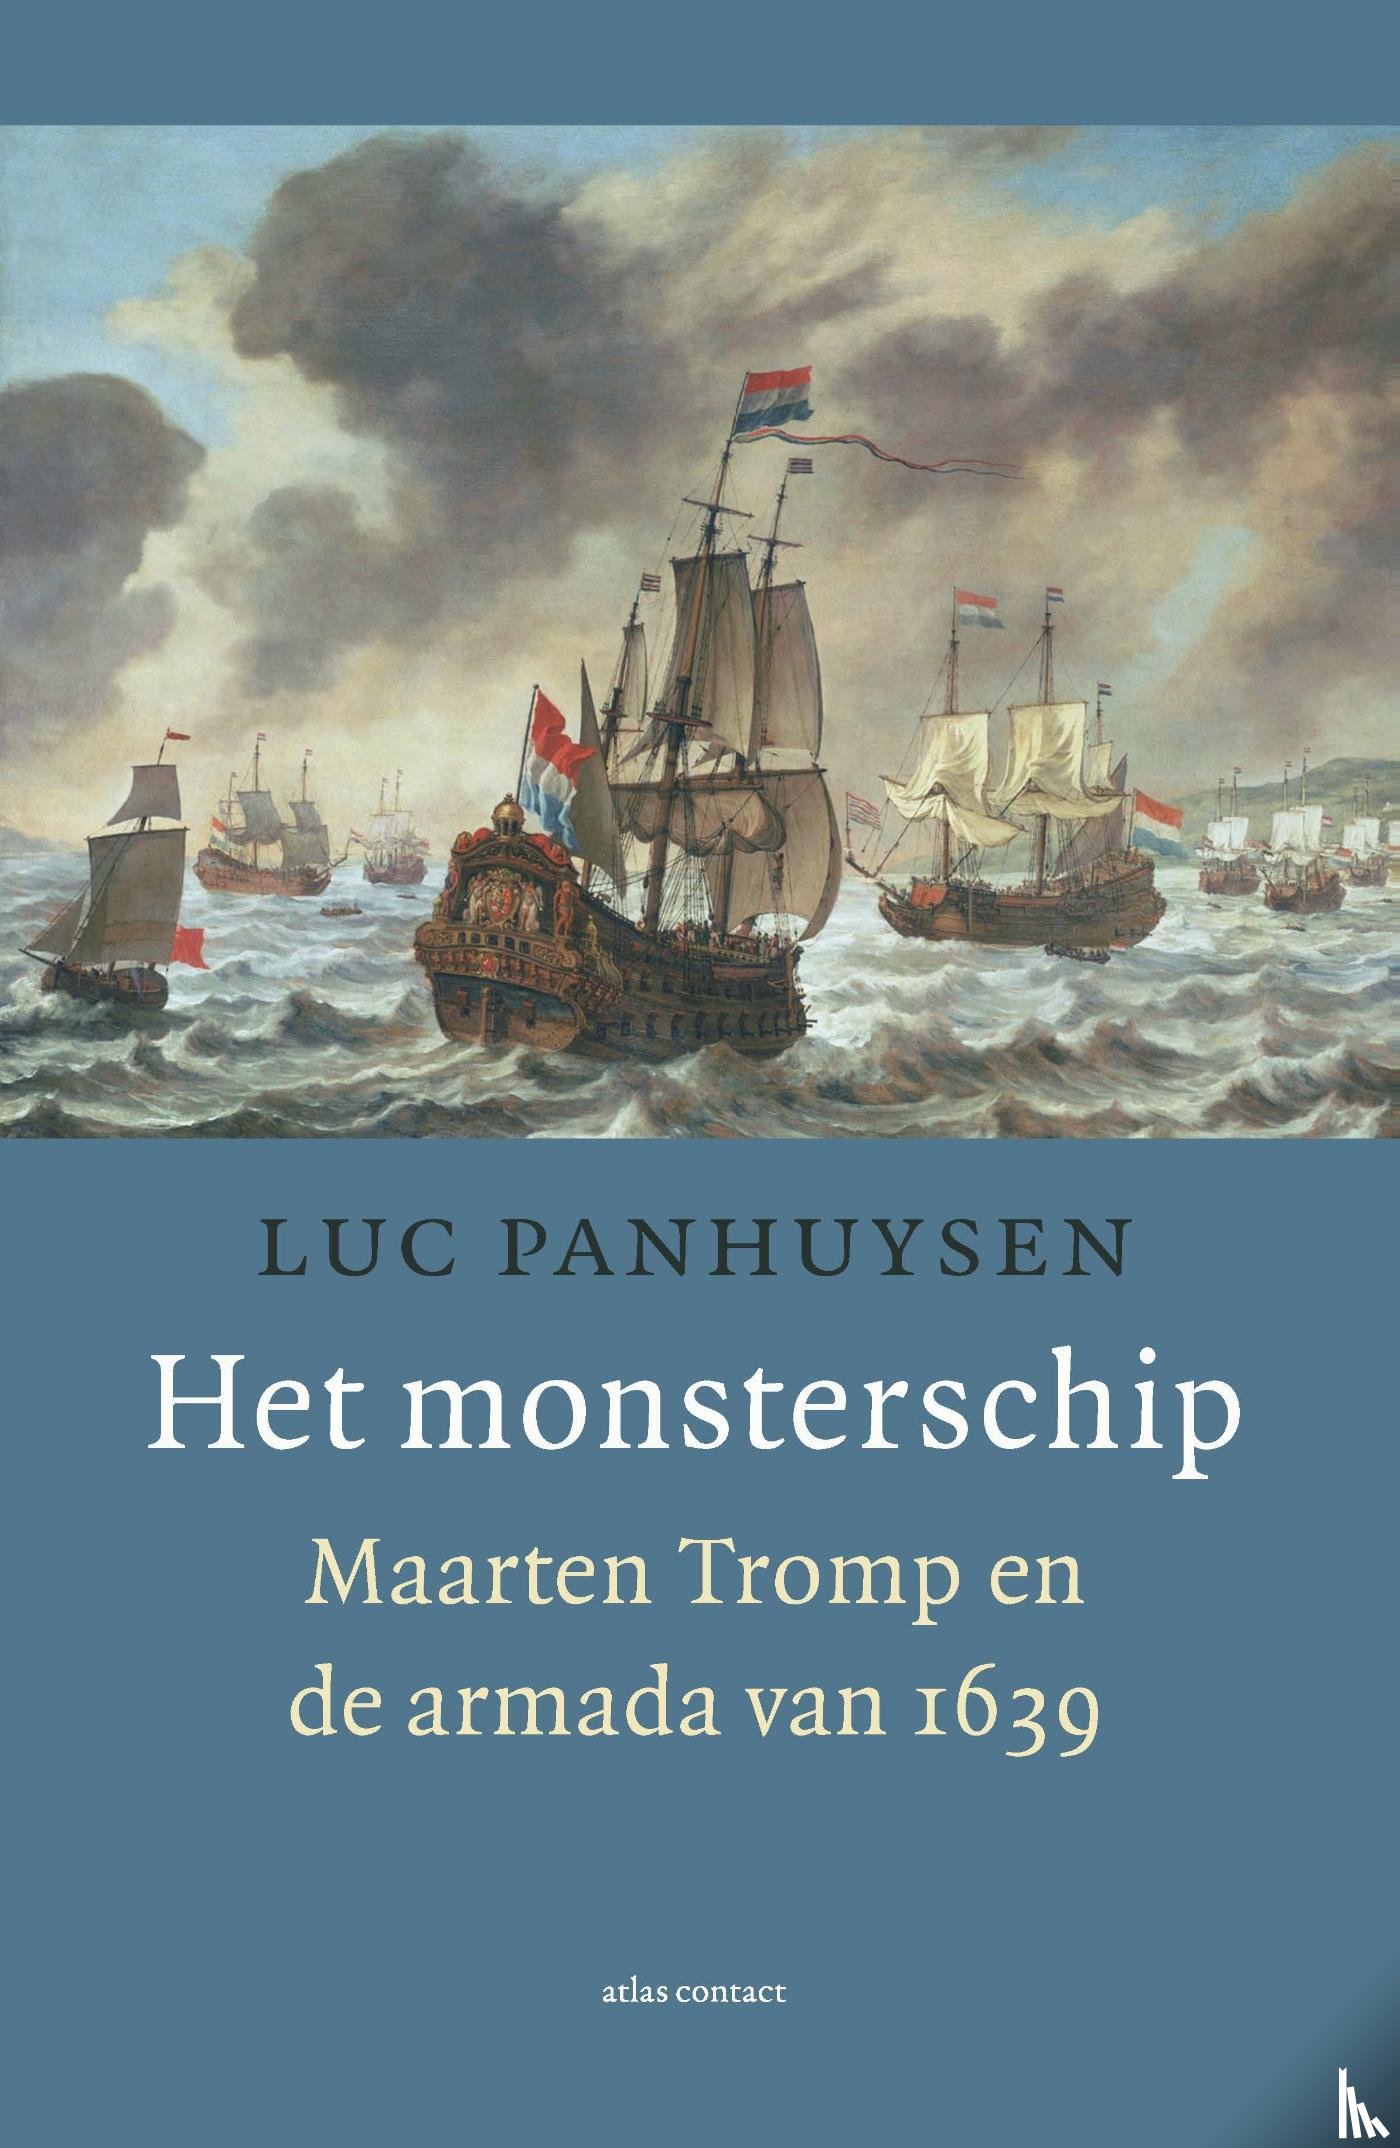 Panhuysen, Luc - Het monsterschip